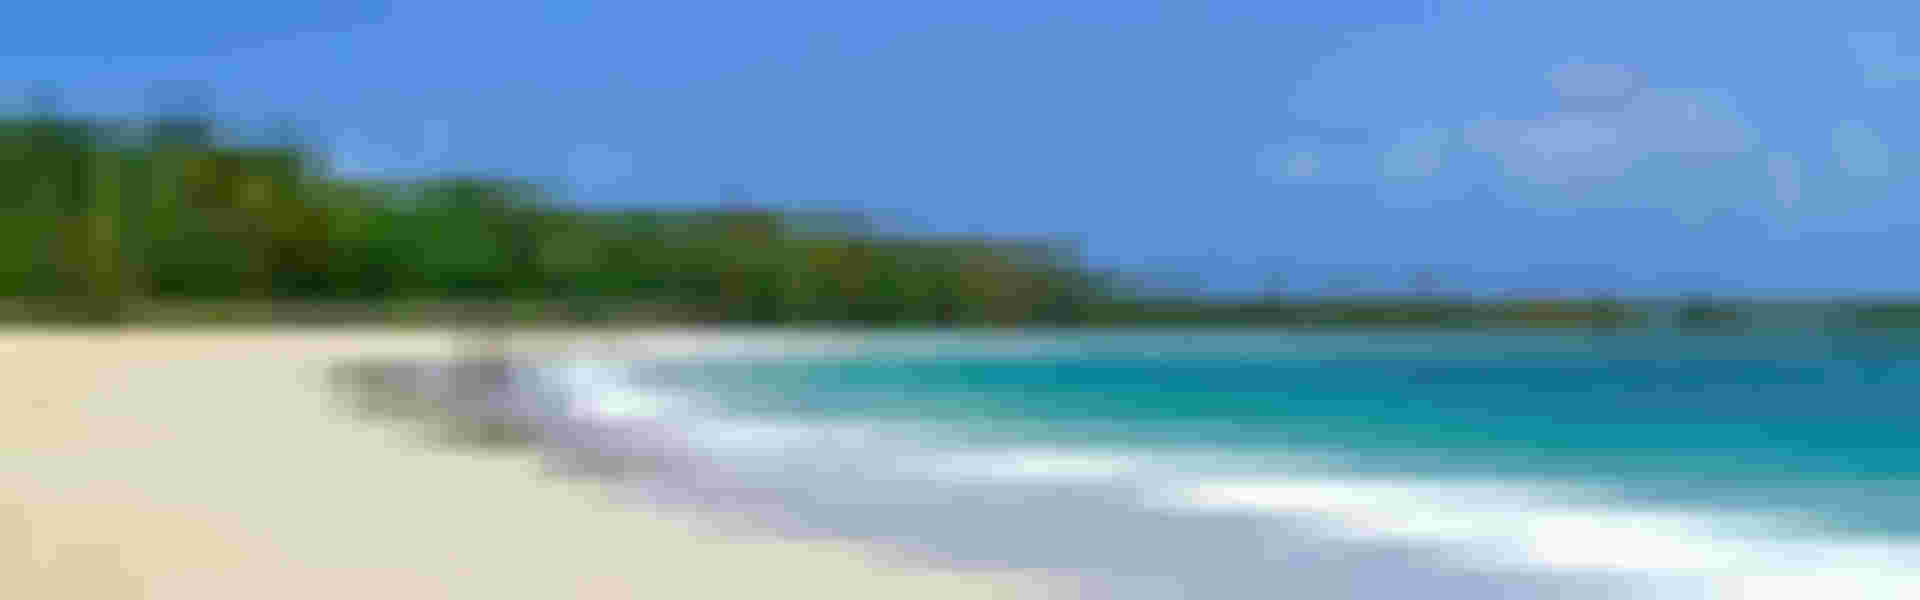 Location de vacances, airbnb & maisons à Anguilla